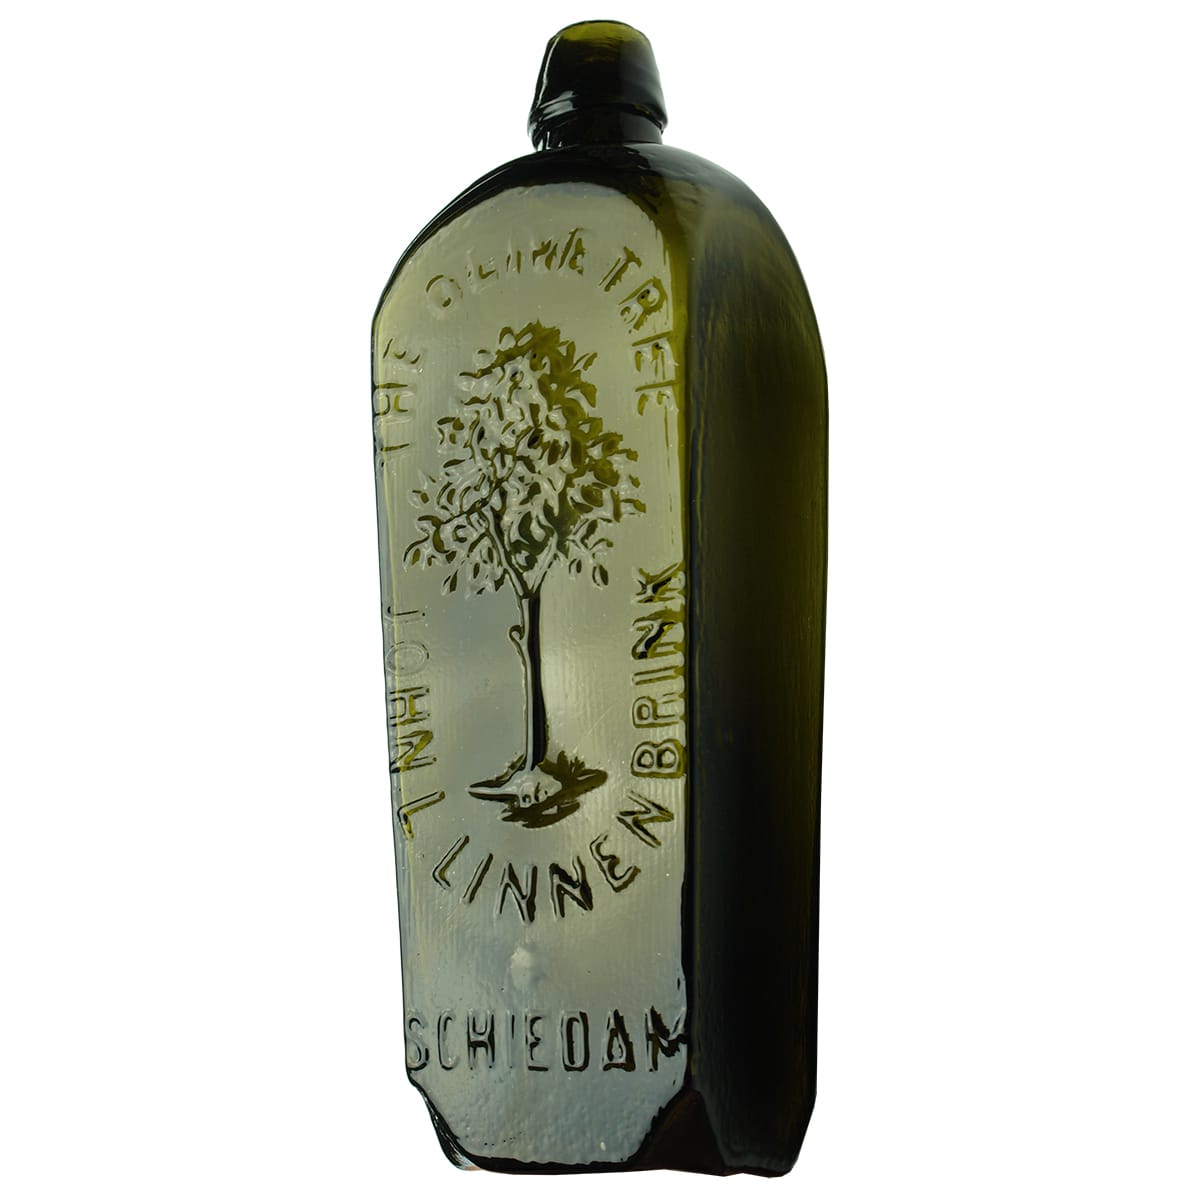 Gin. John L Linnenbrink, Olive Tree. Black. 20 oz.